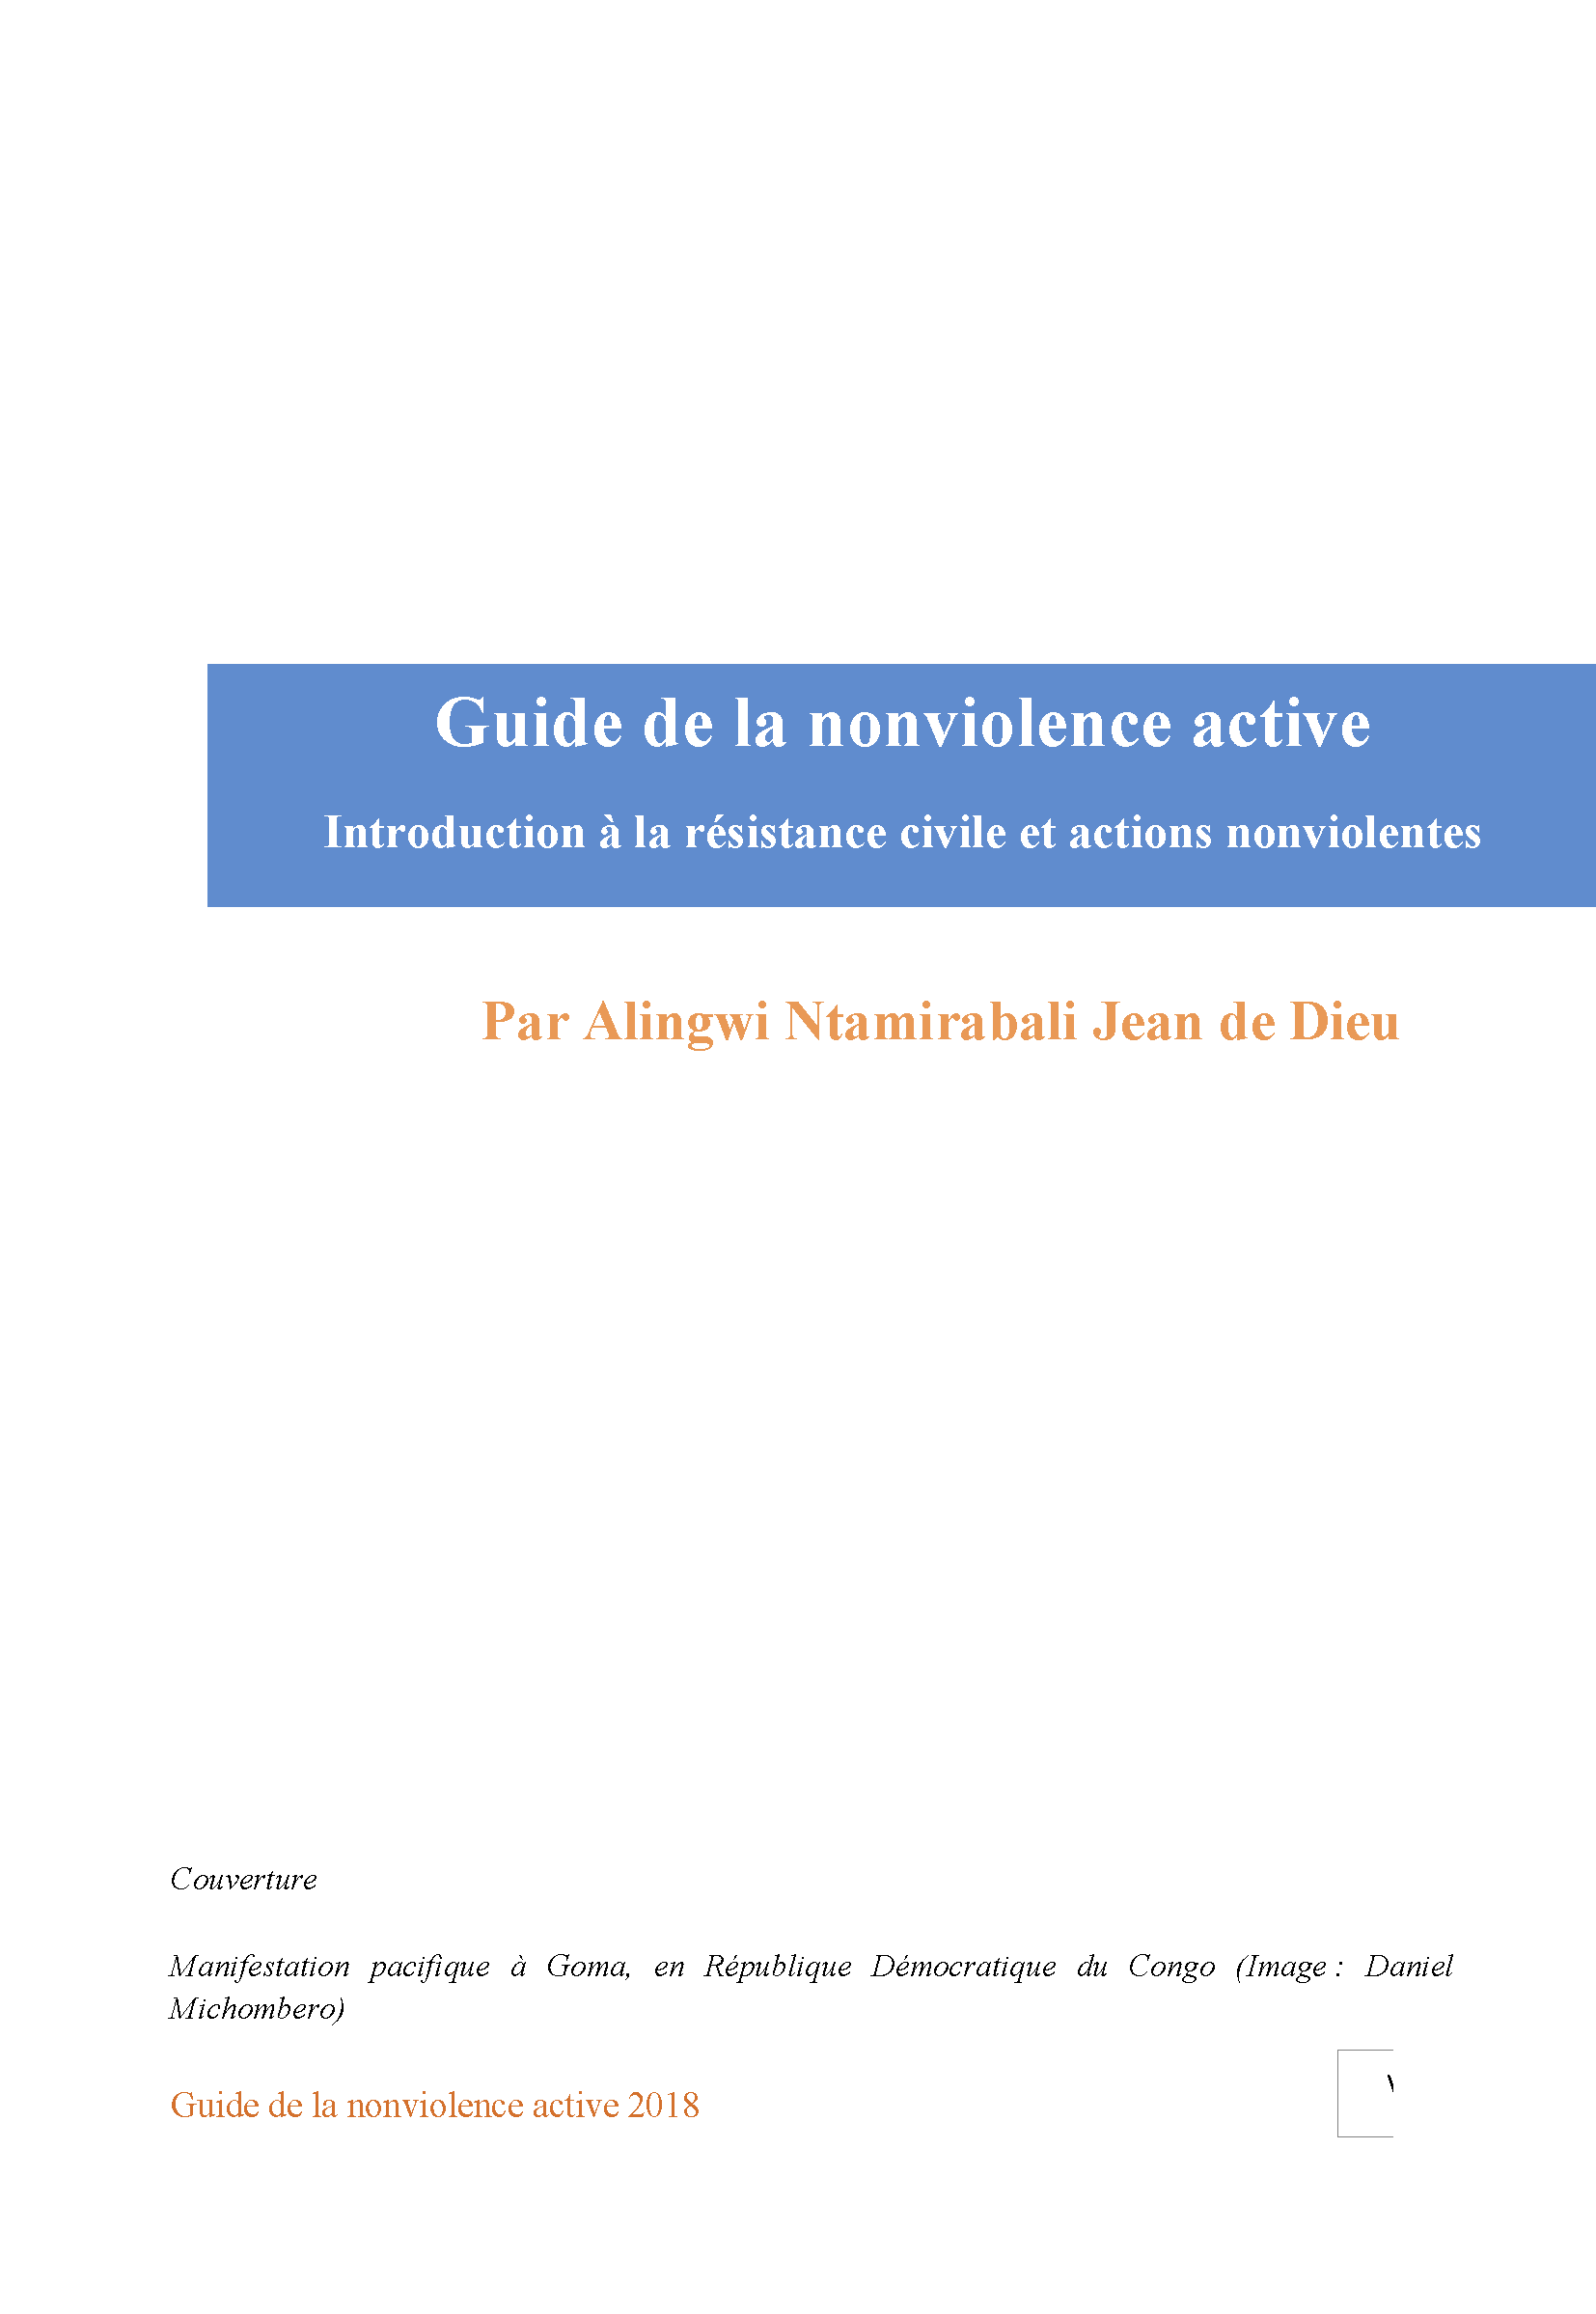 Guide de la nonviolence active: Introduction à la résistance civile et actions nonviolentes (French)